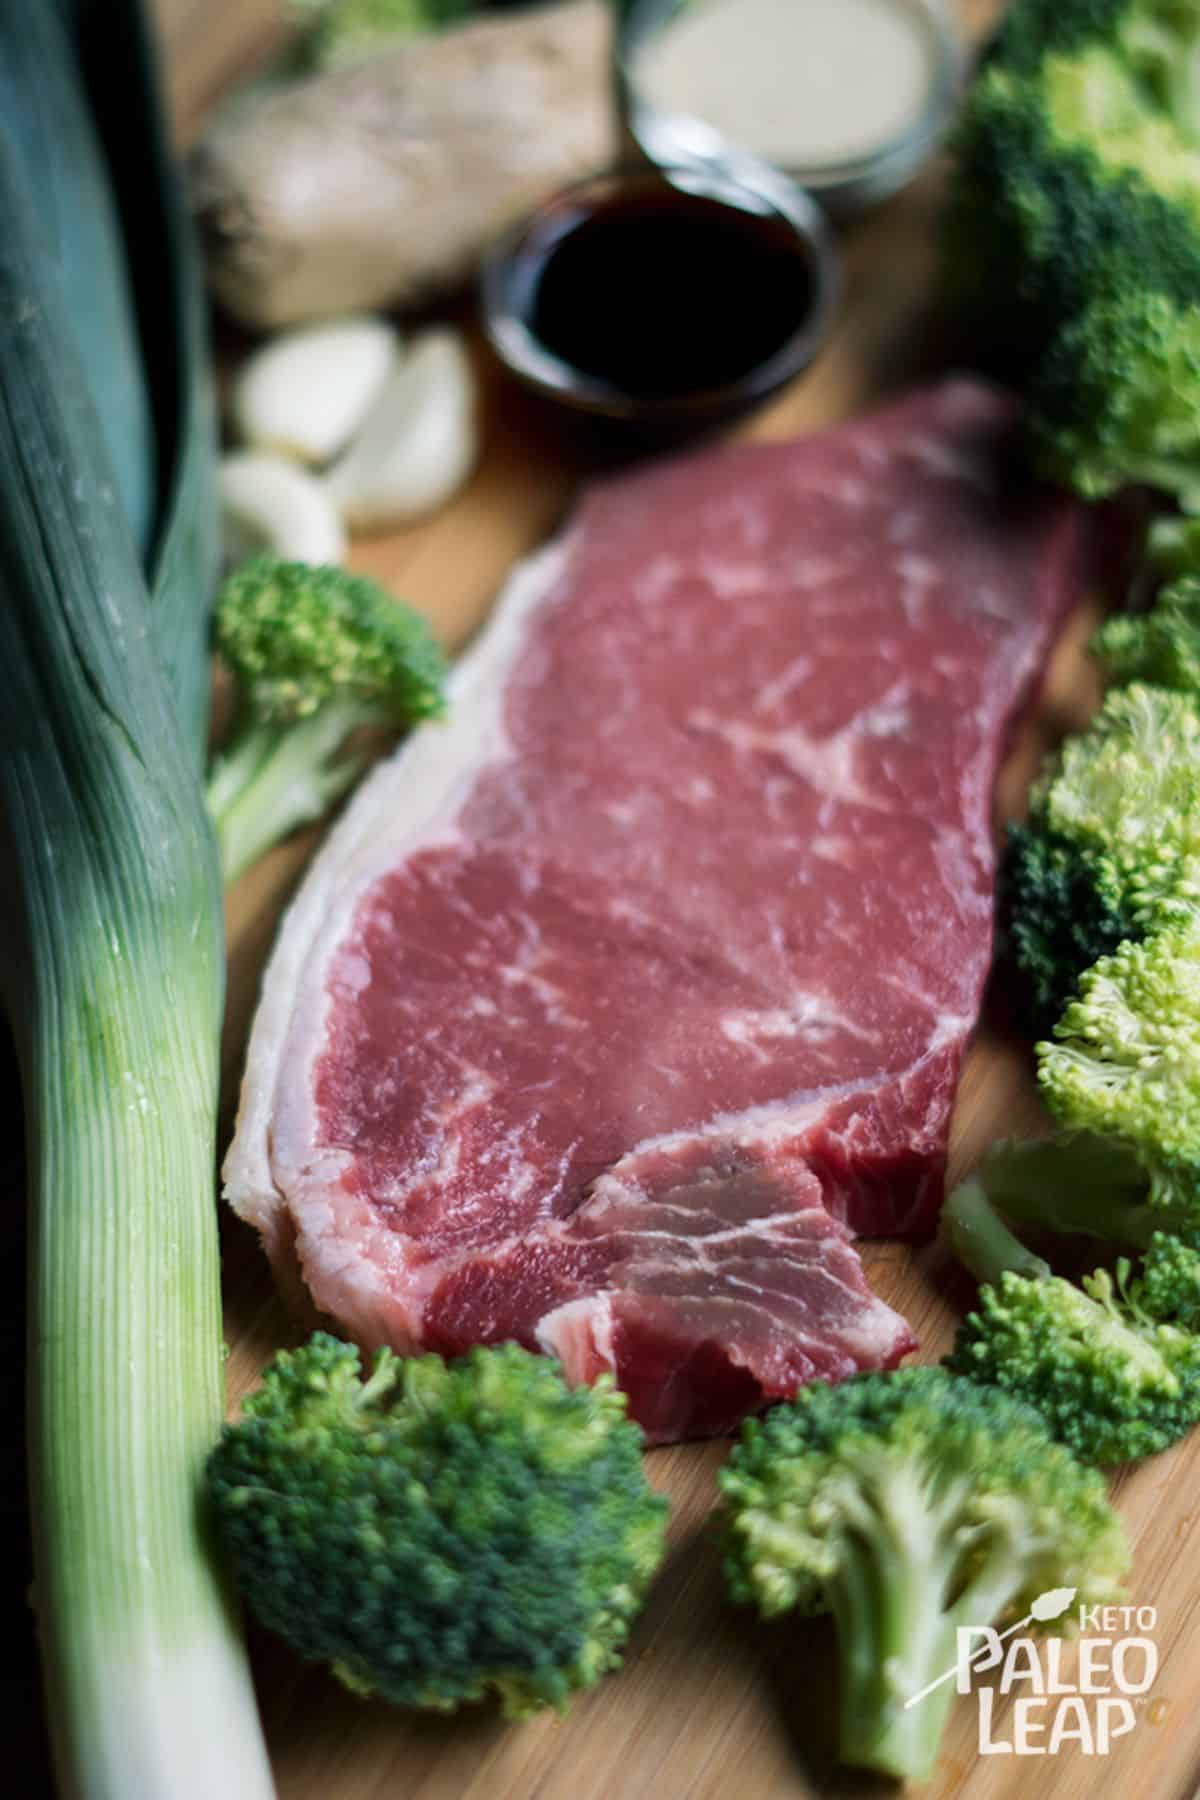 Beef Broccoli Preparation